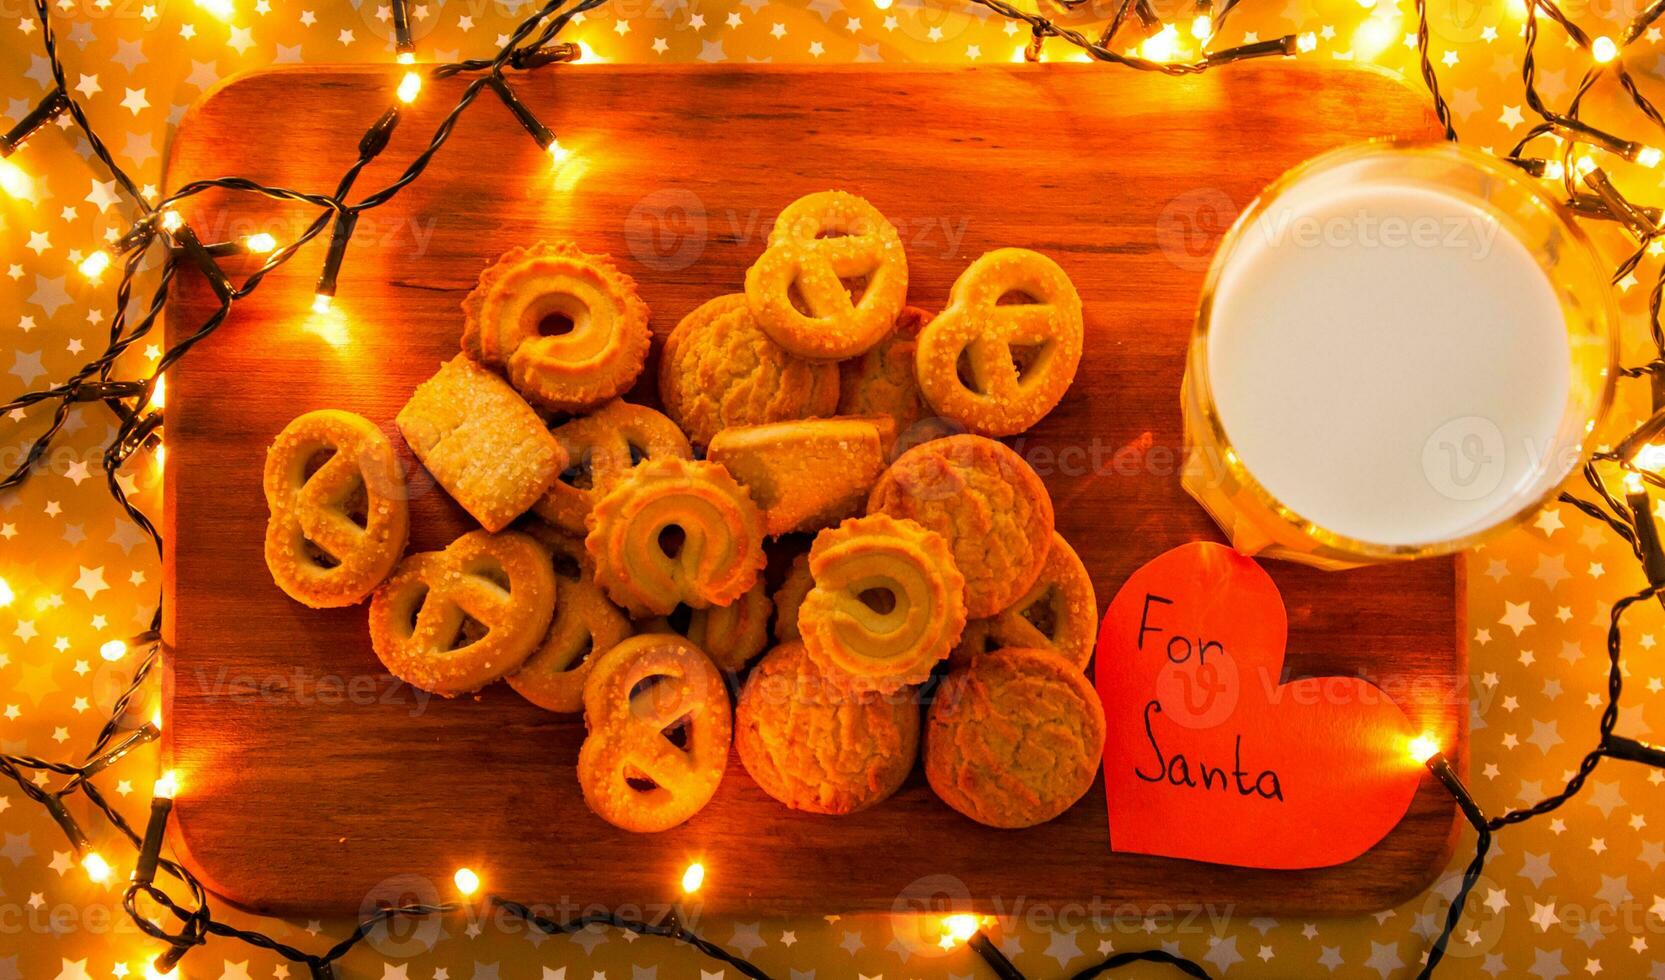 de madeira borda com amarelo biscoitos, vidro do leite, papel coração para santa e cercado com Natal luzes foto